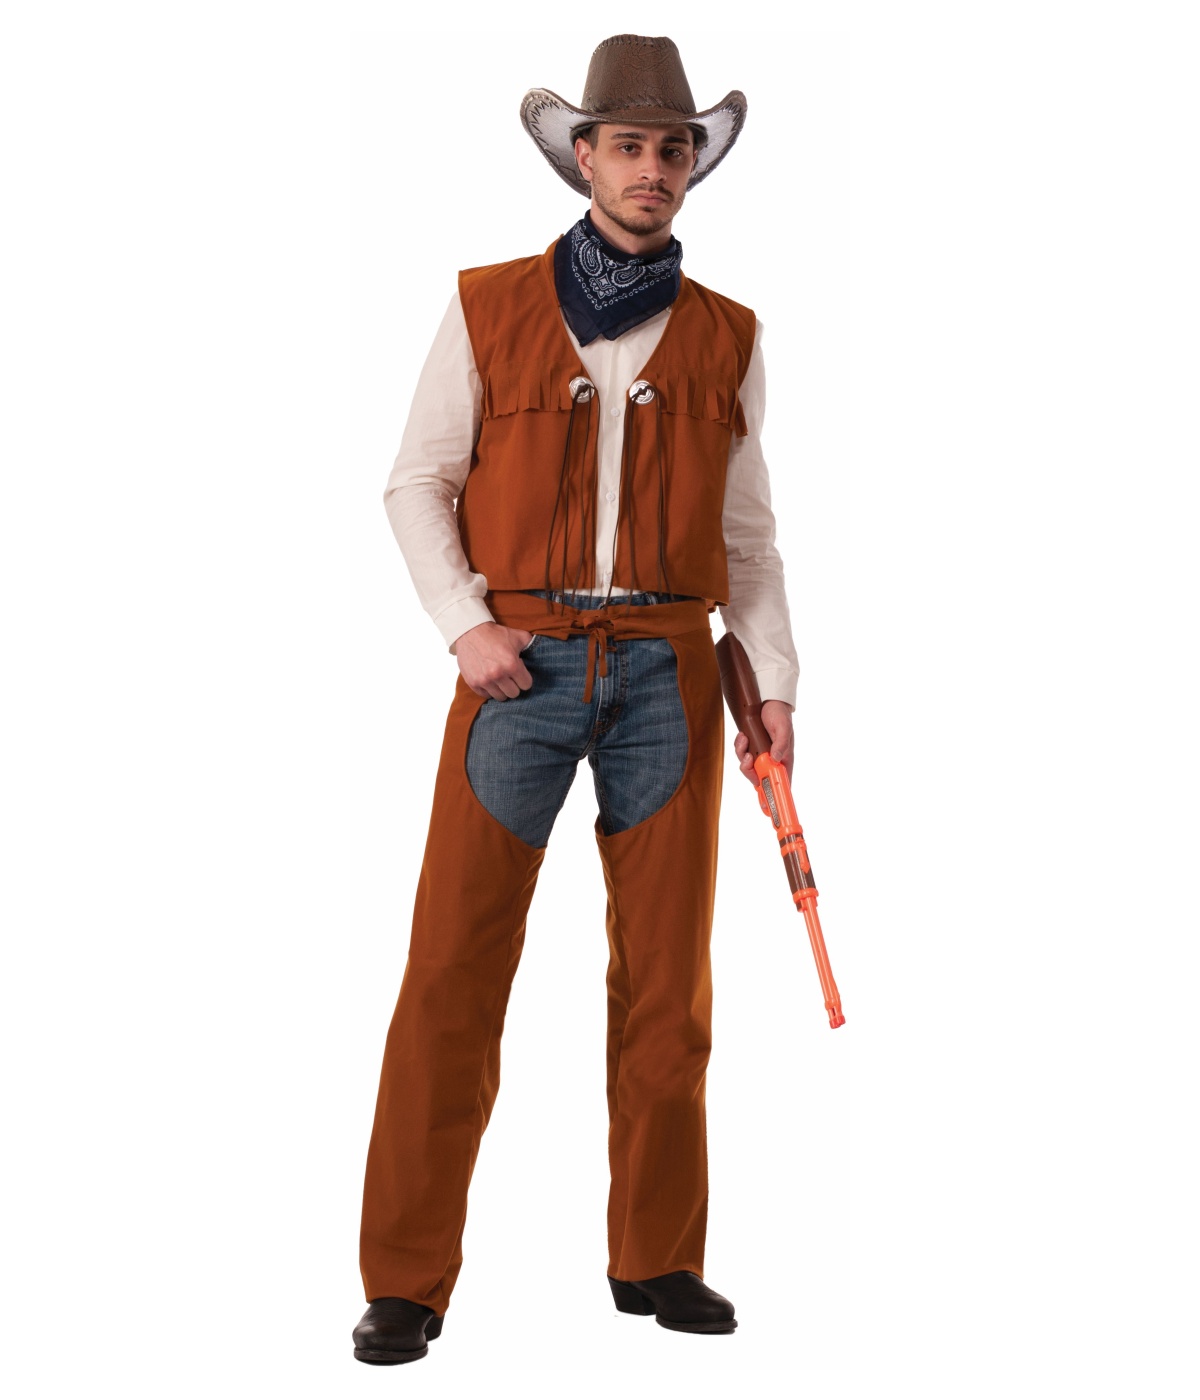  Mens West Cowboy Costume